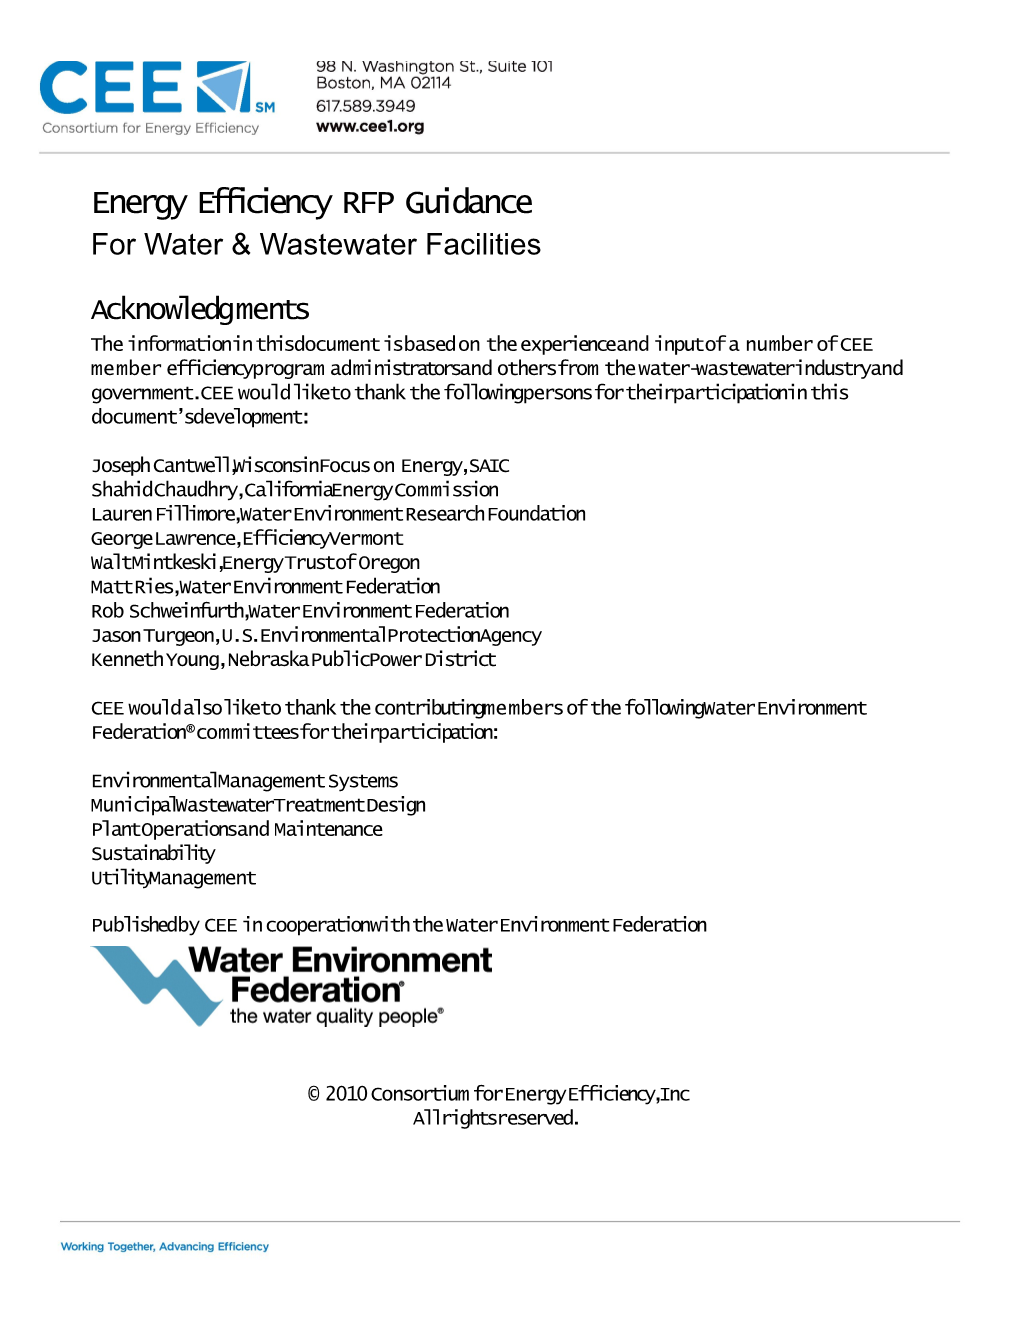 Energy Efficiency RFP Guidance